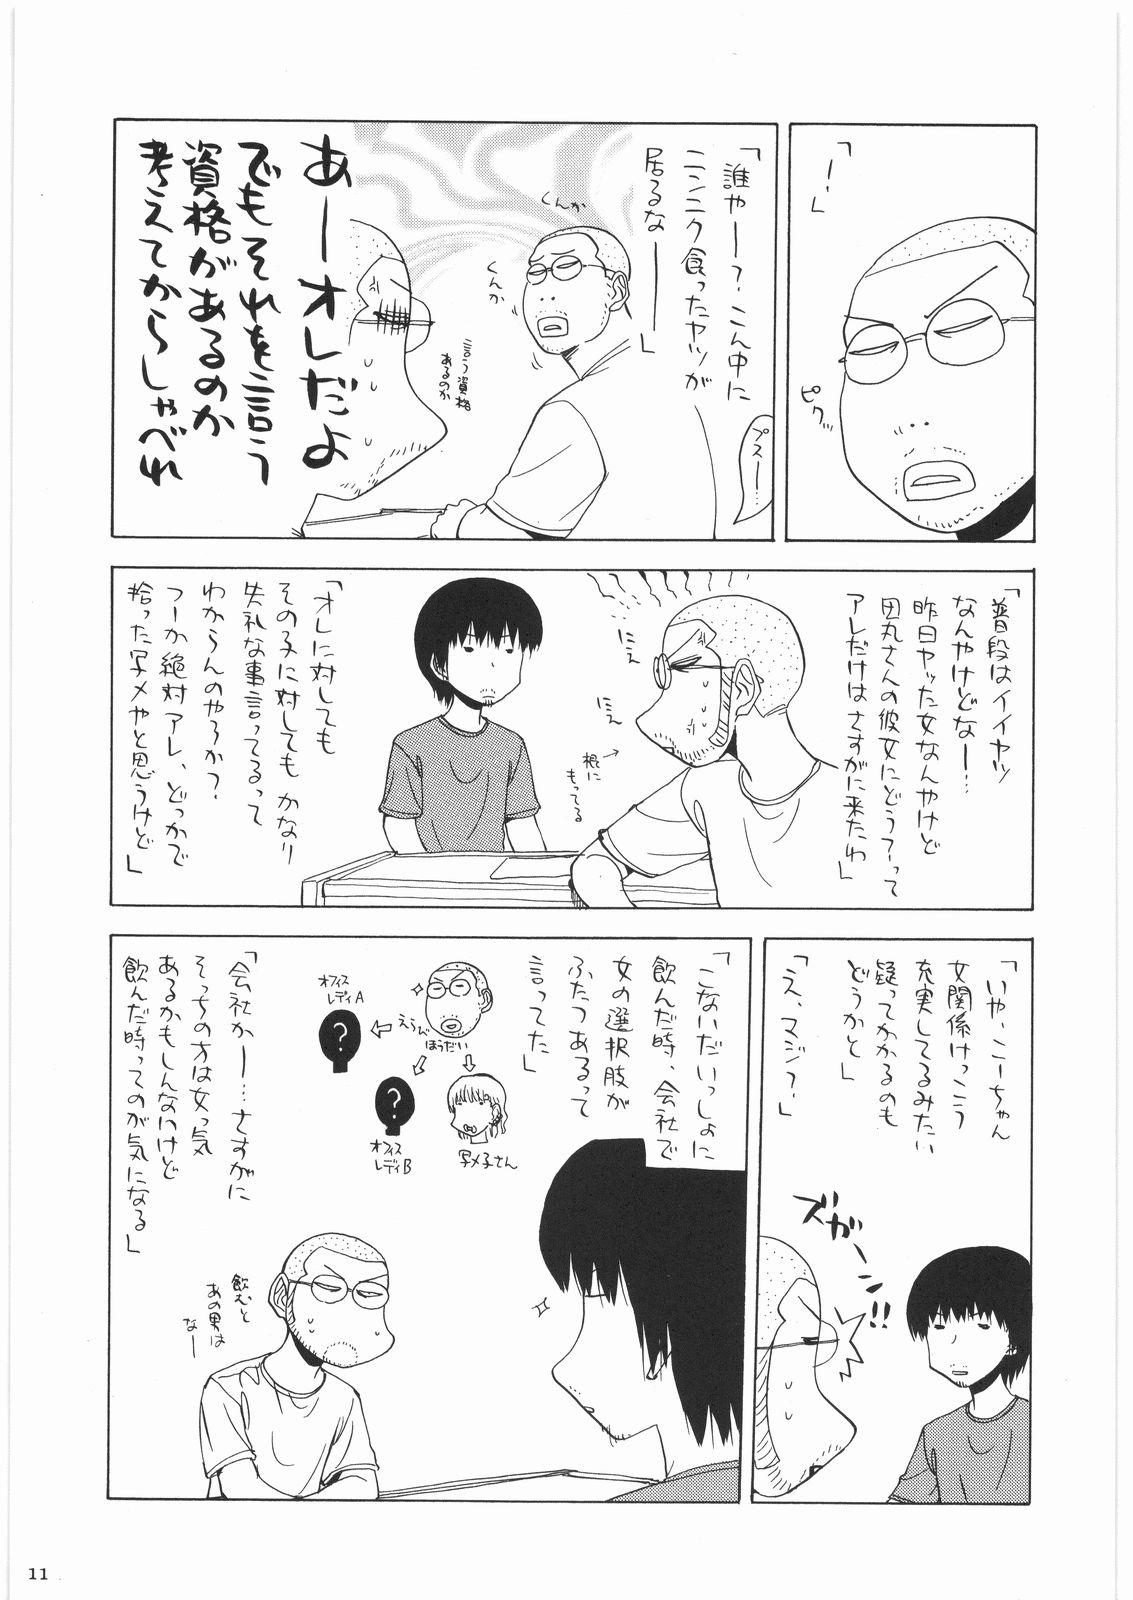 Ass Fuck Oneesama Koushien - K-on Monster hunter Umineko no naku koro ni Erotica - Page 10